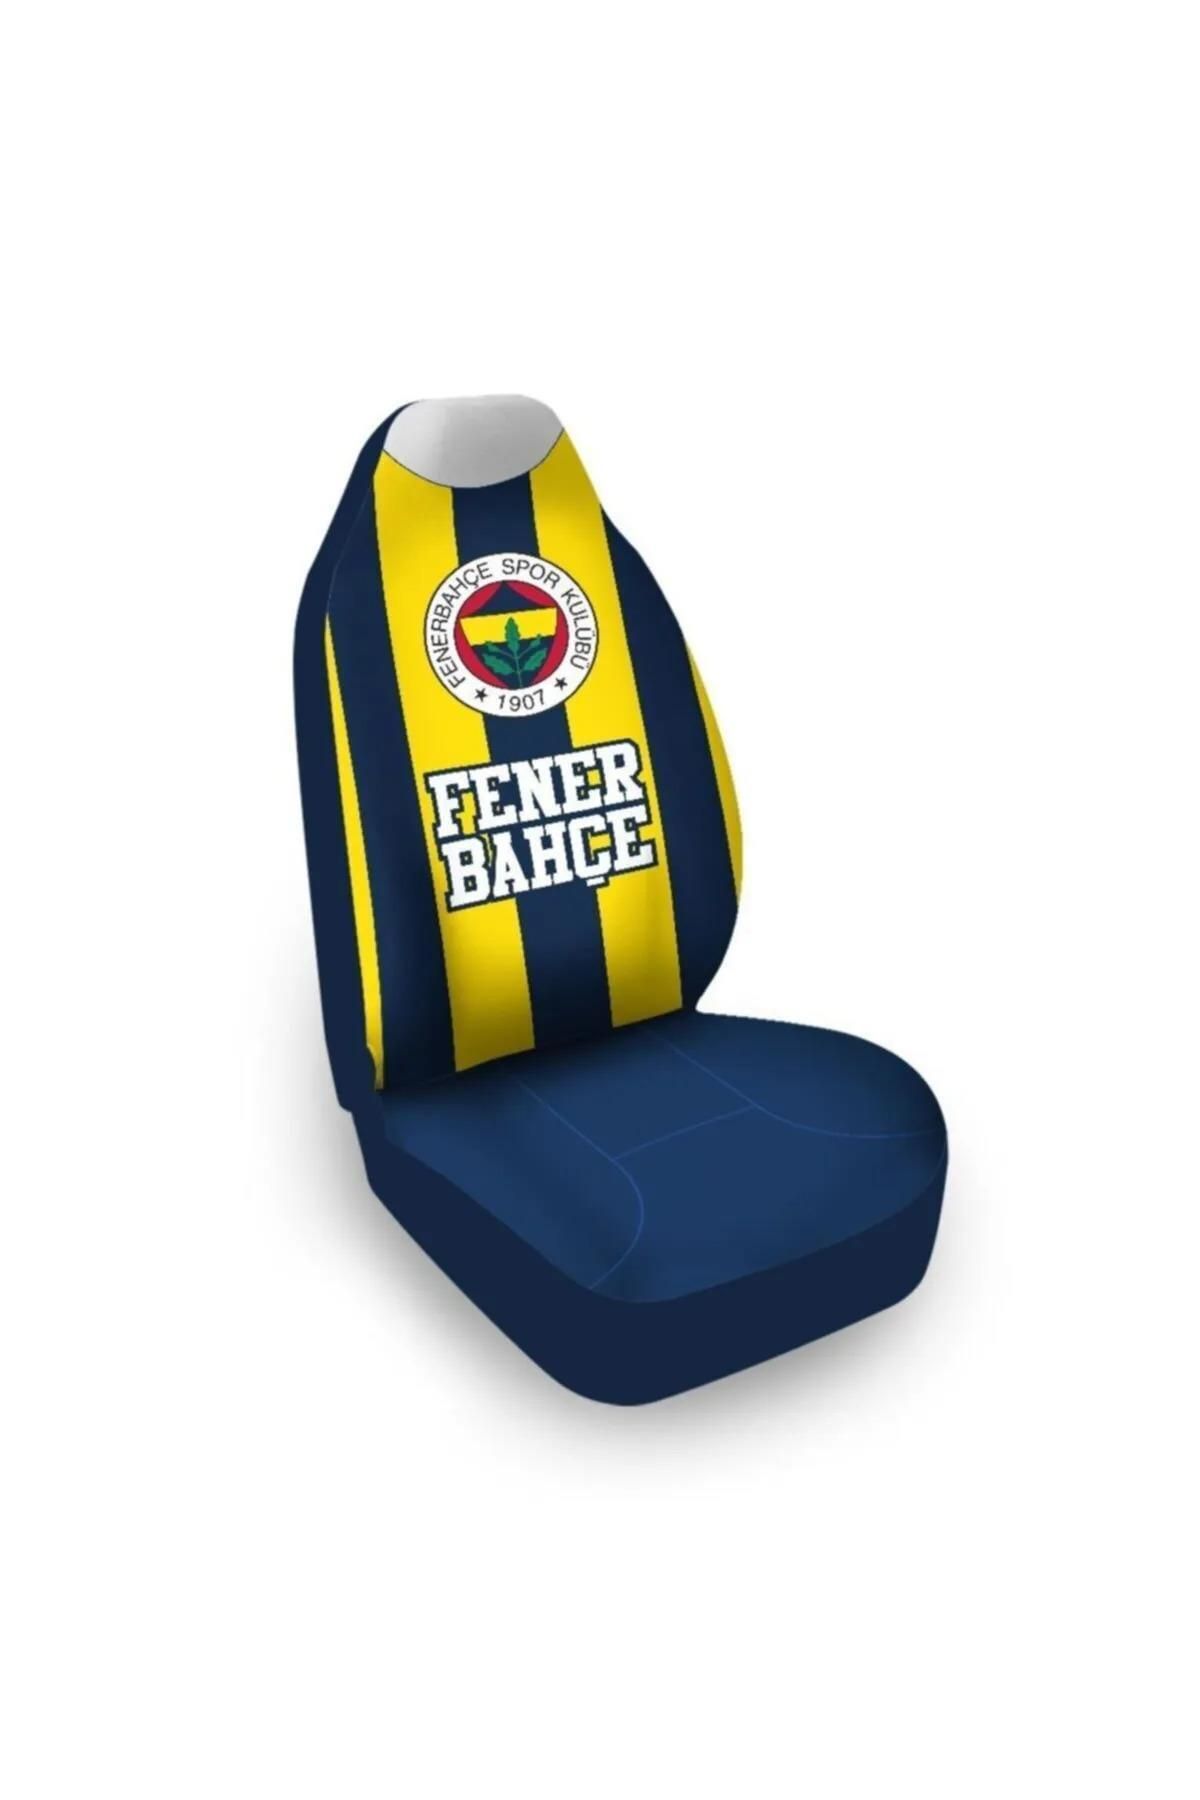 Fenerbahçe Lisanslı 2'li Çubuklu Araba Koltuk Kılıfı